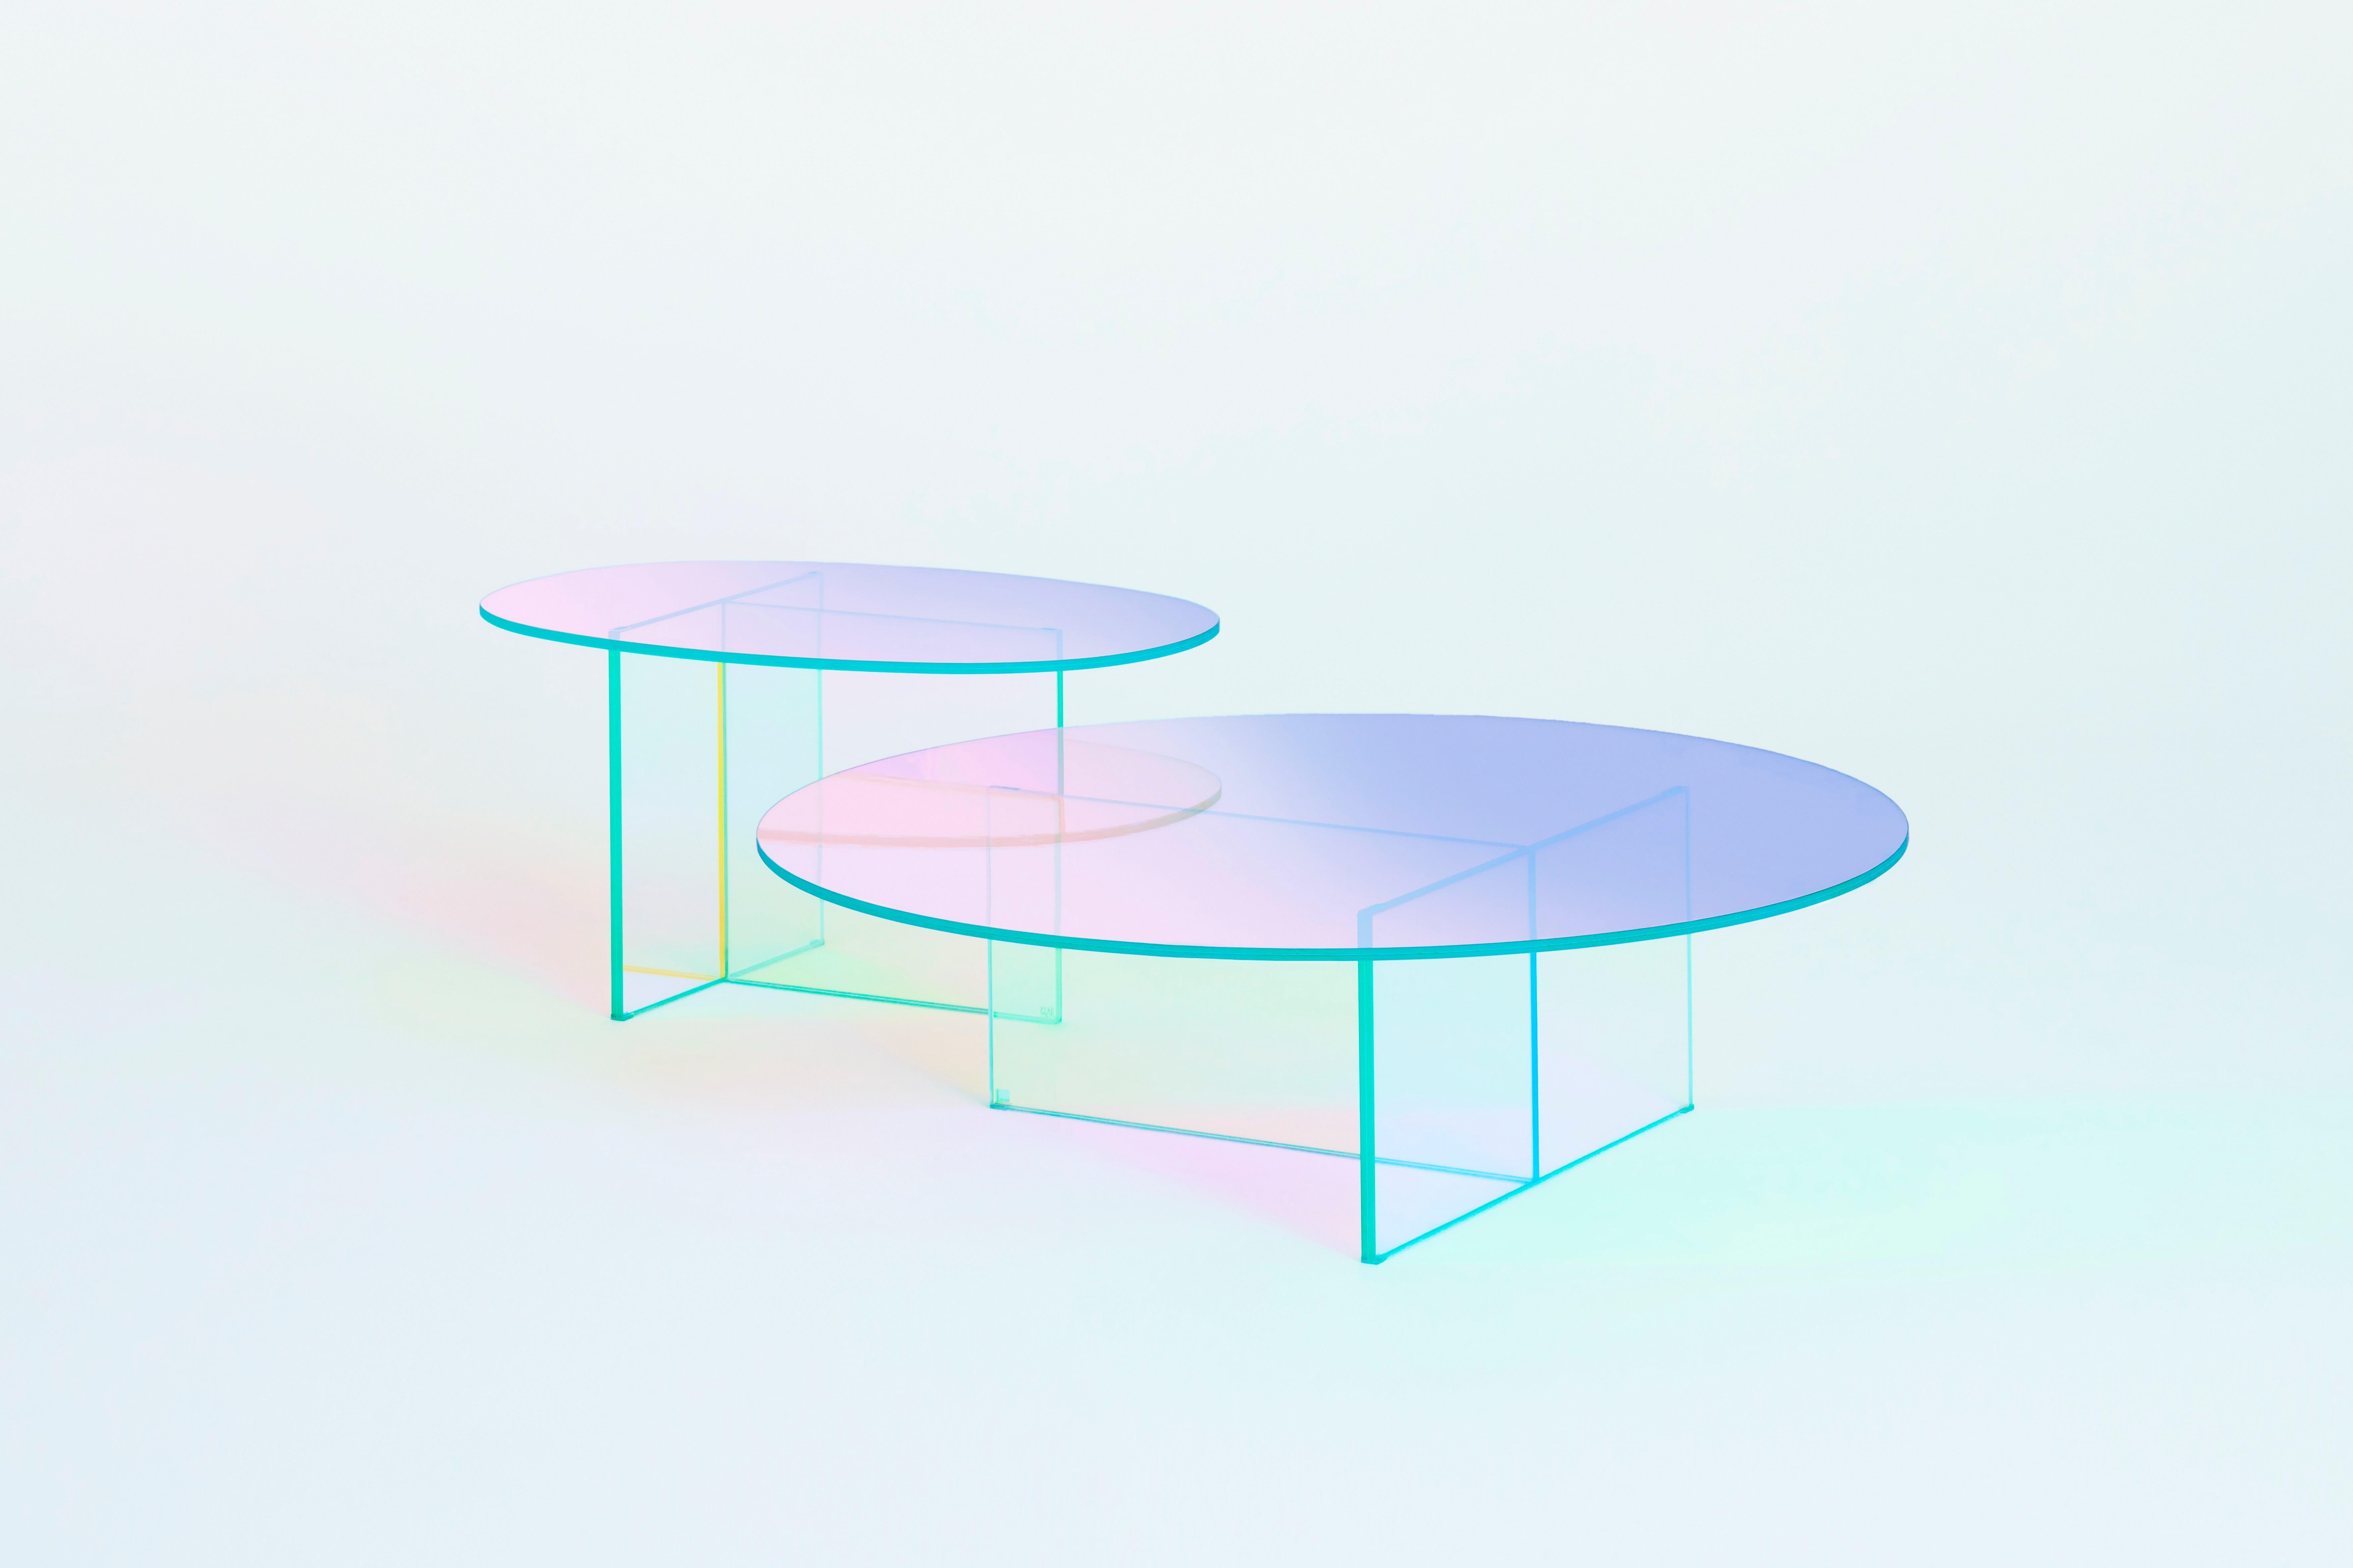 Niedrige Tische und Konsolen aus laminiertem und geklebtem Glas, die sich durch eine spezielle irisierende, mehrfarbige Oberfläche auszeichnen; die Nuance variiert je nach Winkel der Lichtquelle und des Blickwinkels. 
Erhältlich in transparentem